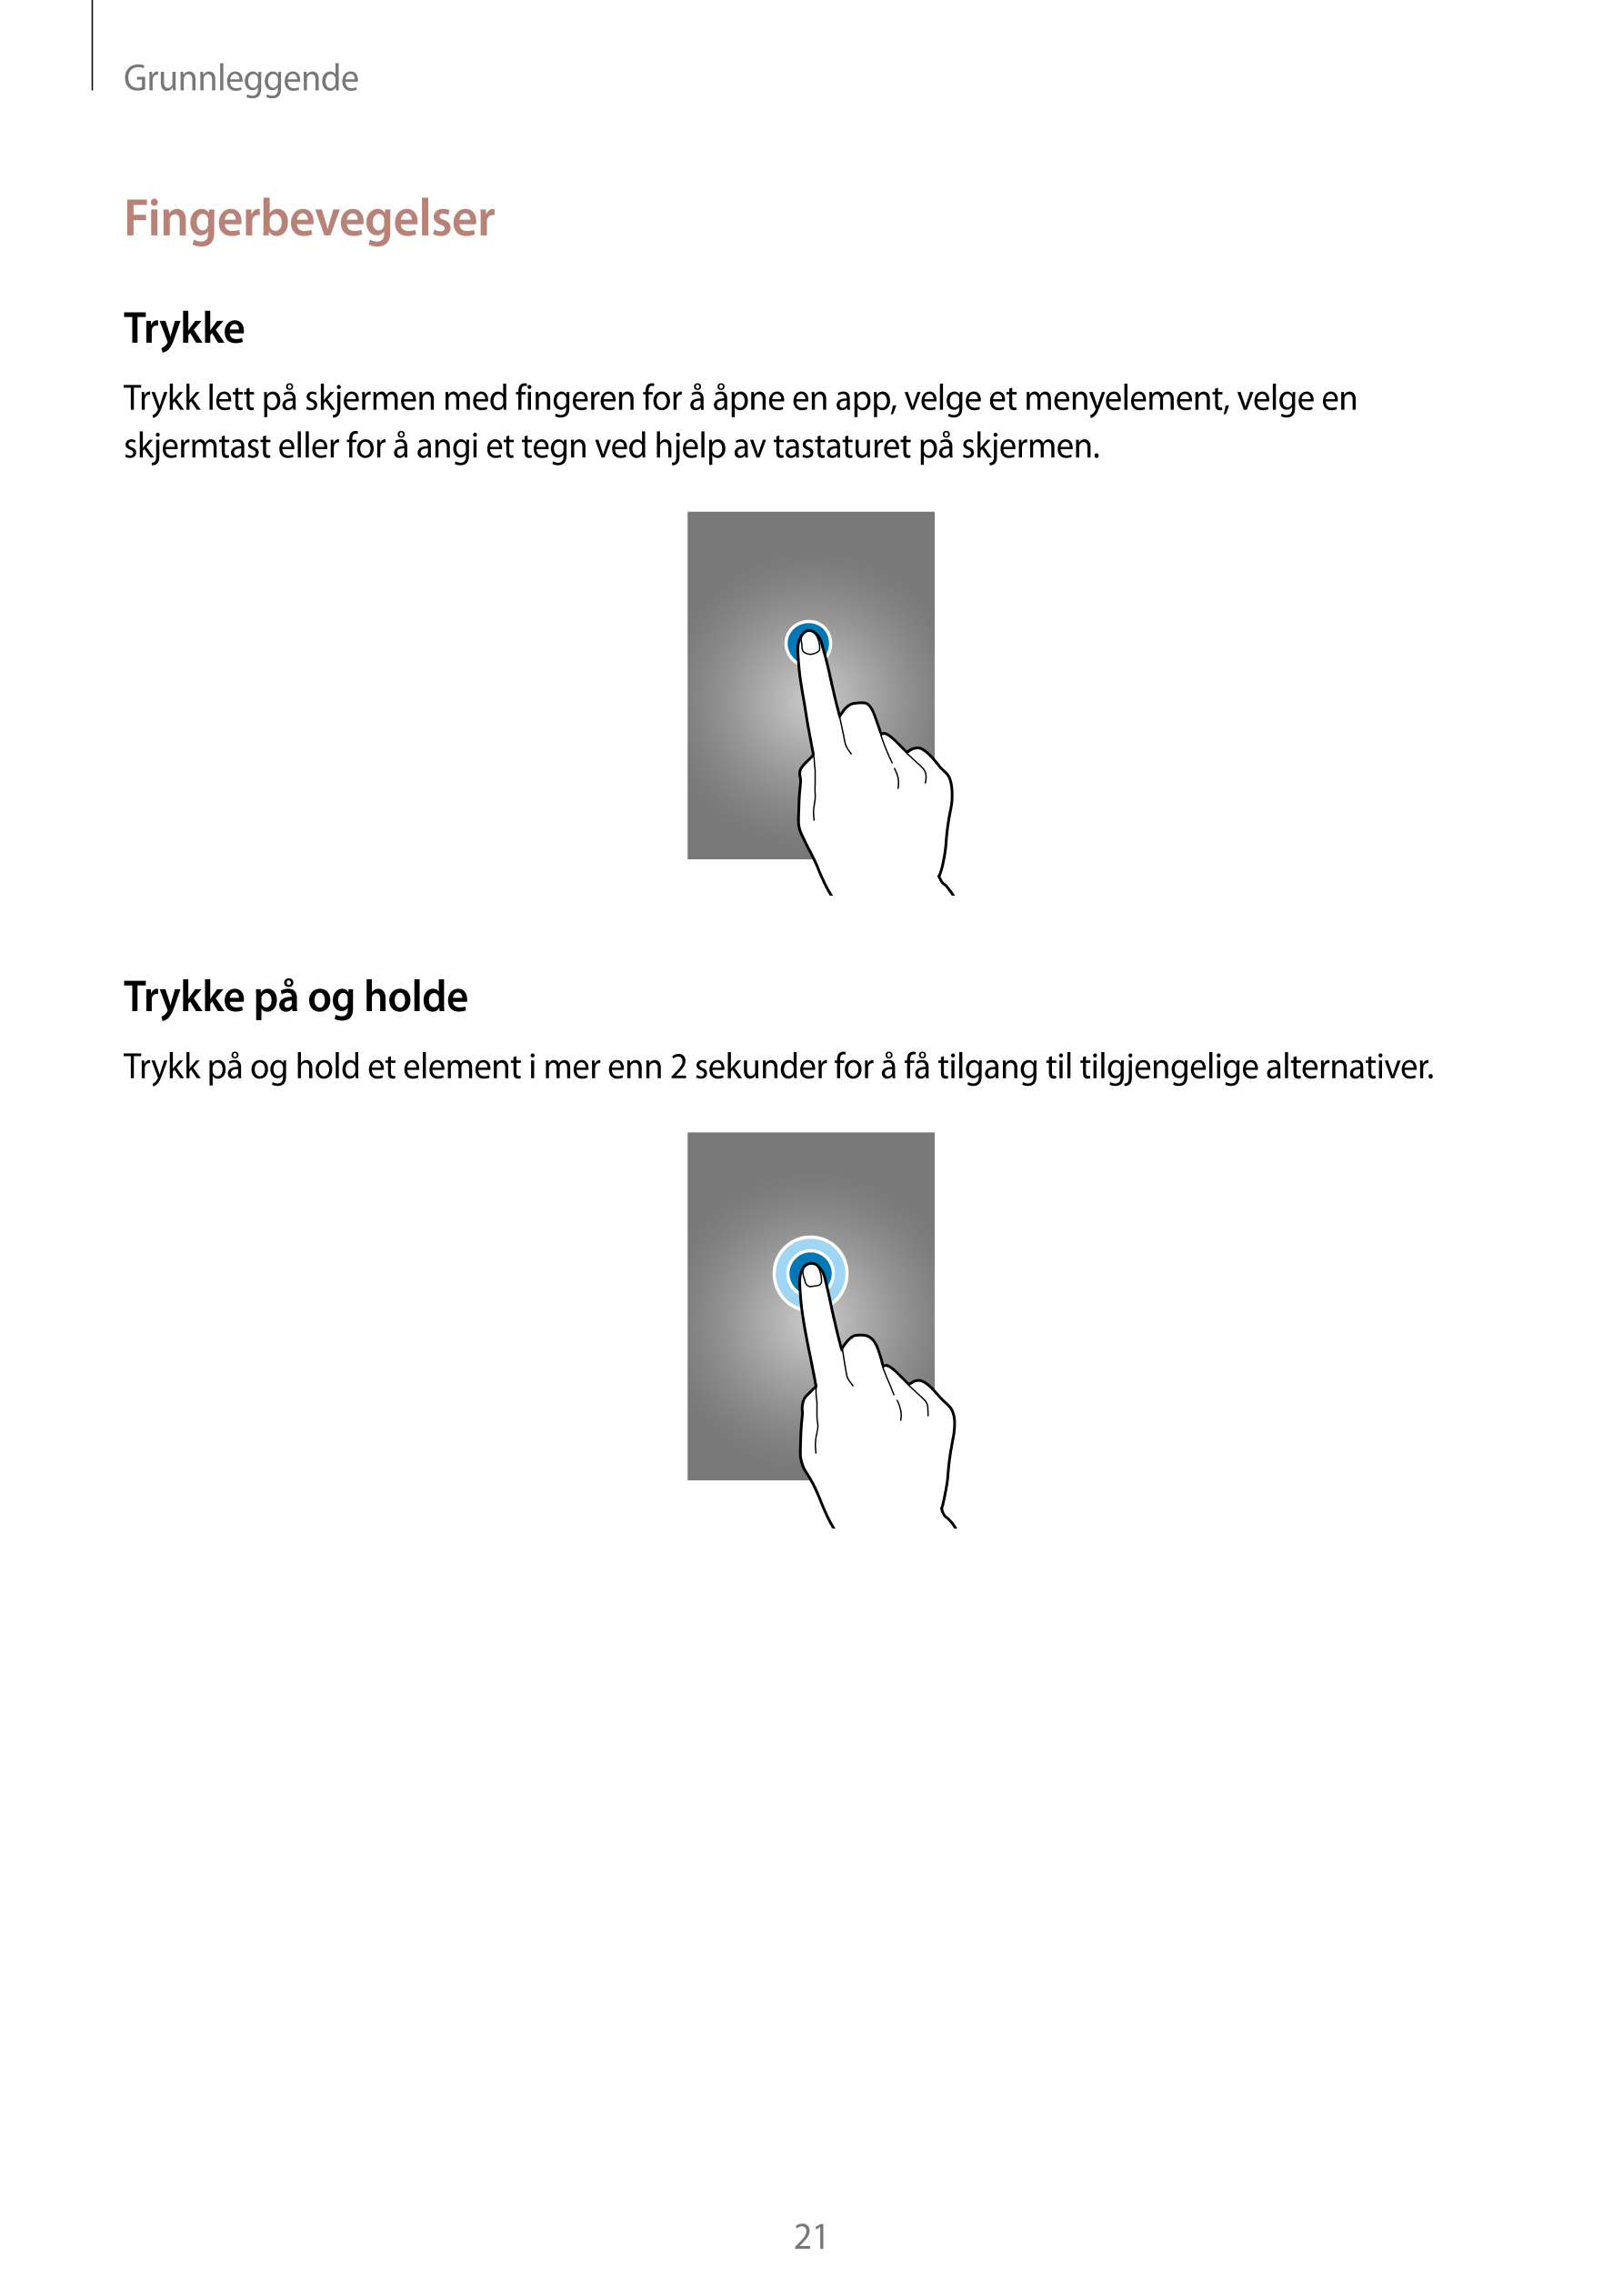 Grunnleggende
Fingerbevegelser
Trykke
Trykk lett på skjermen med fingeren for å åpne en app, velge et menyelement, velge en 
skj